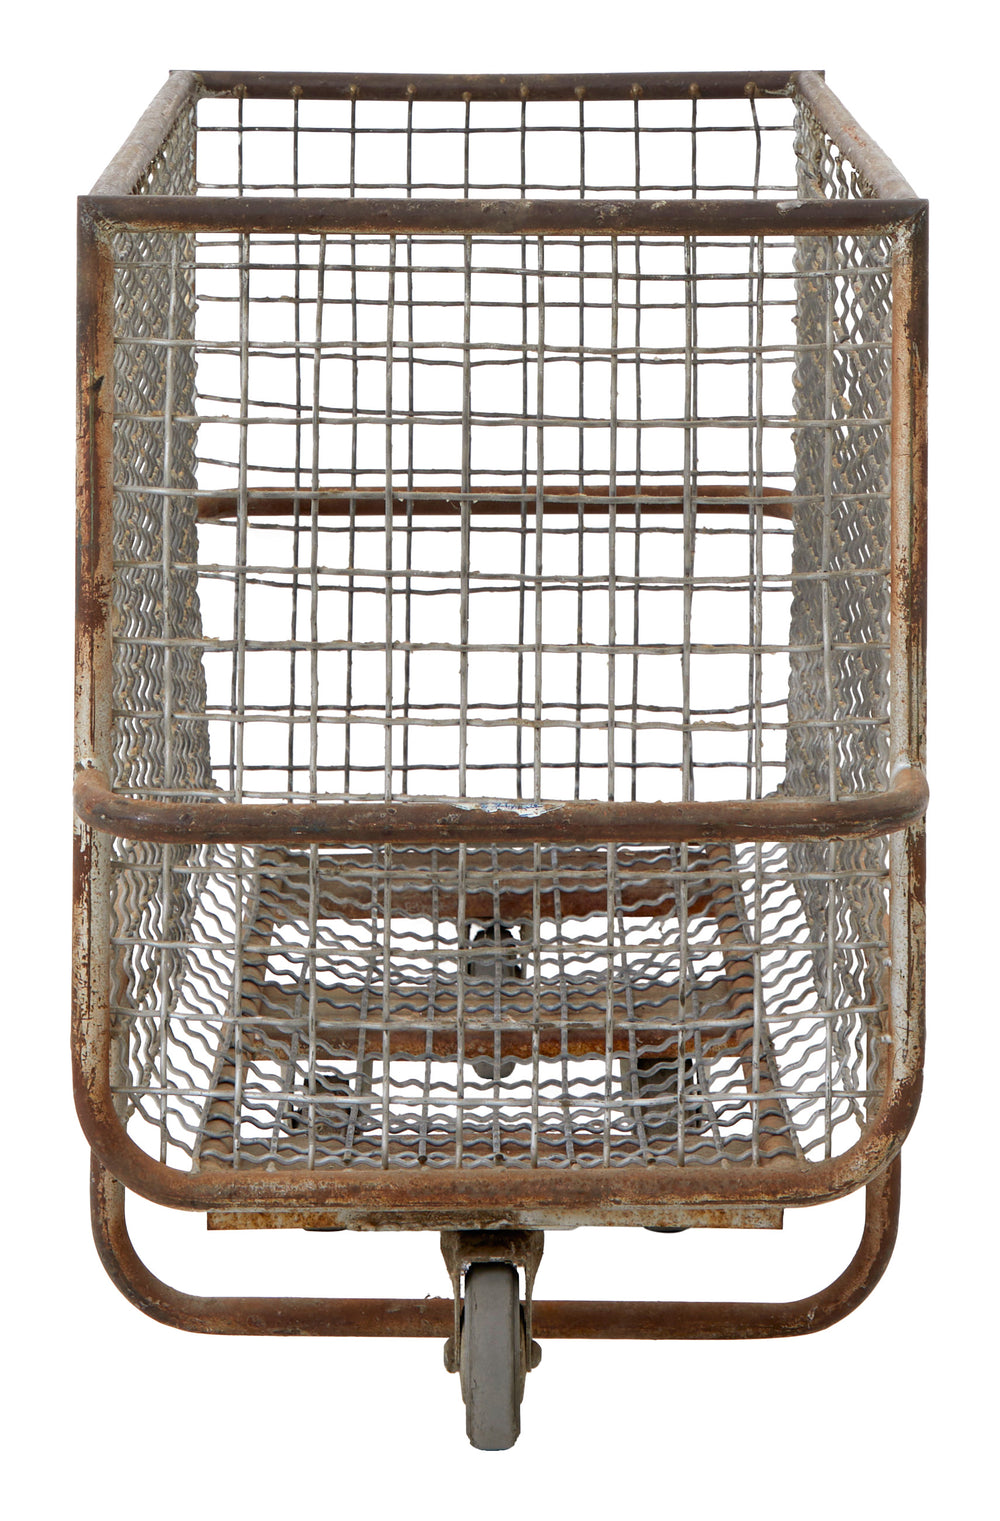 Vintage Industrial Rolling Basket